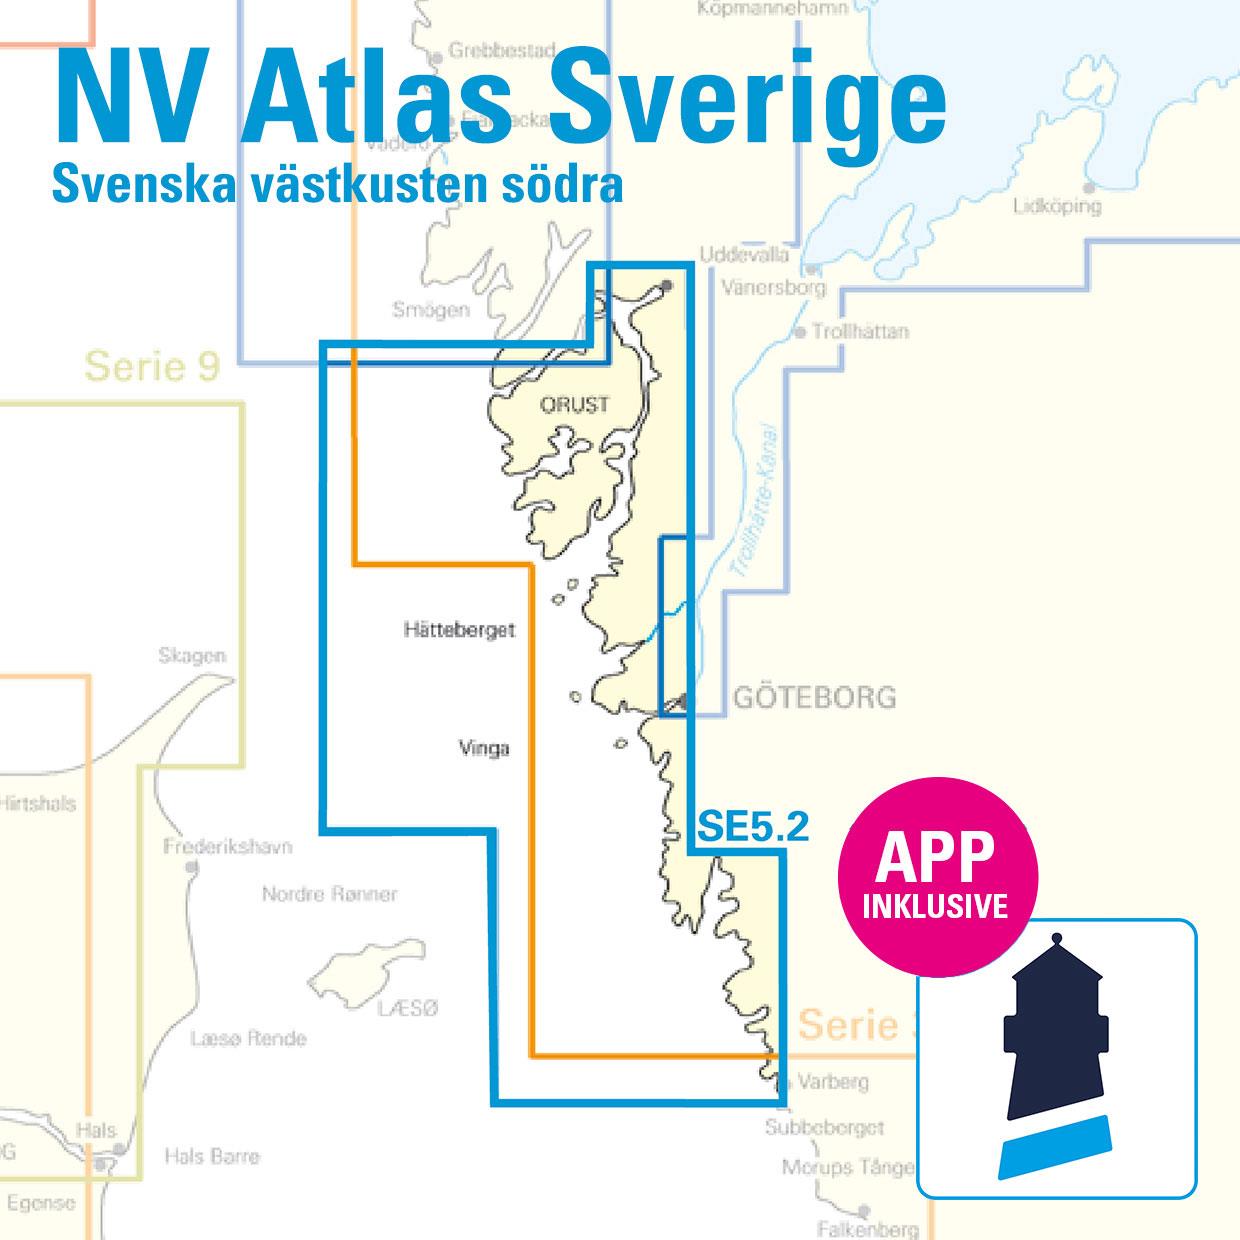 NV Charts Sverige SE 5.2 - Svenska Västkusten Södra